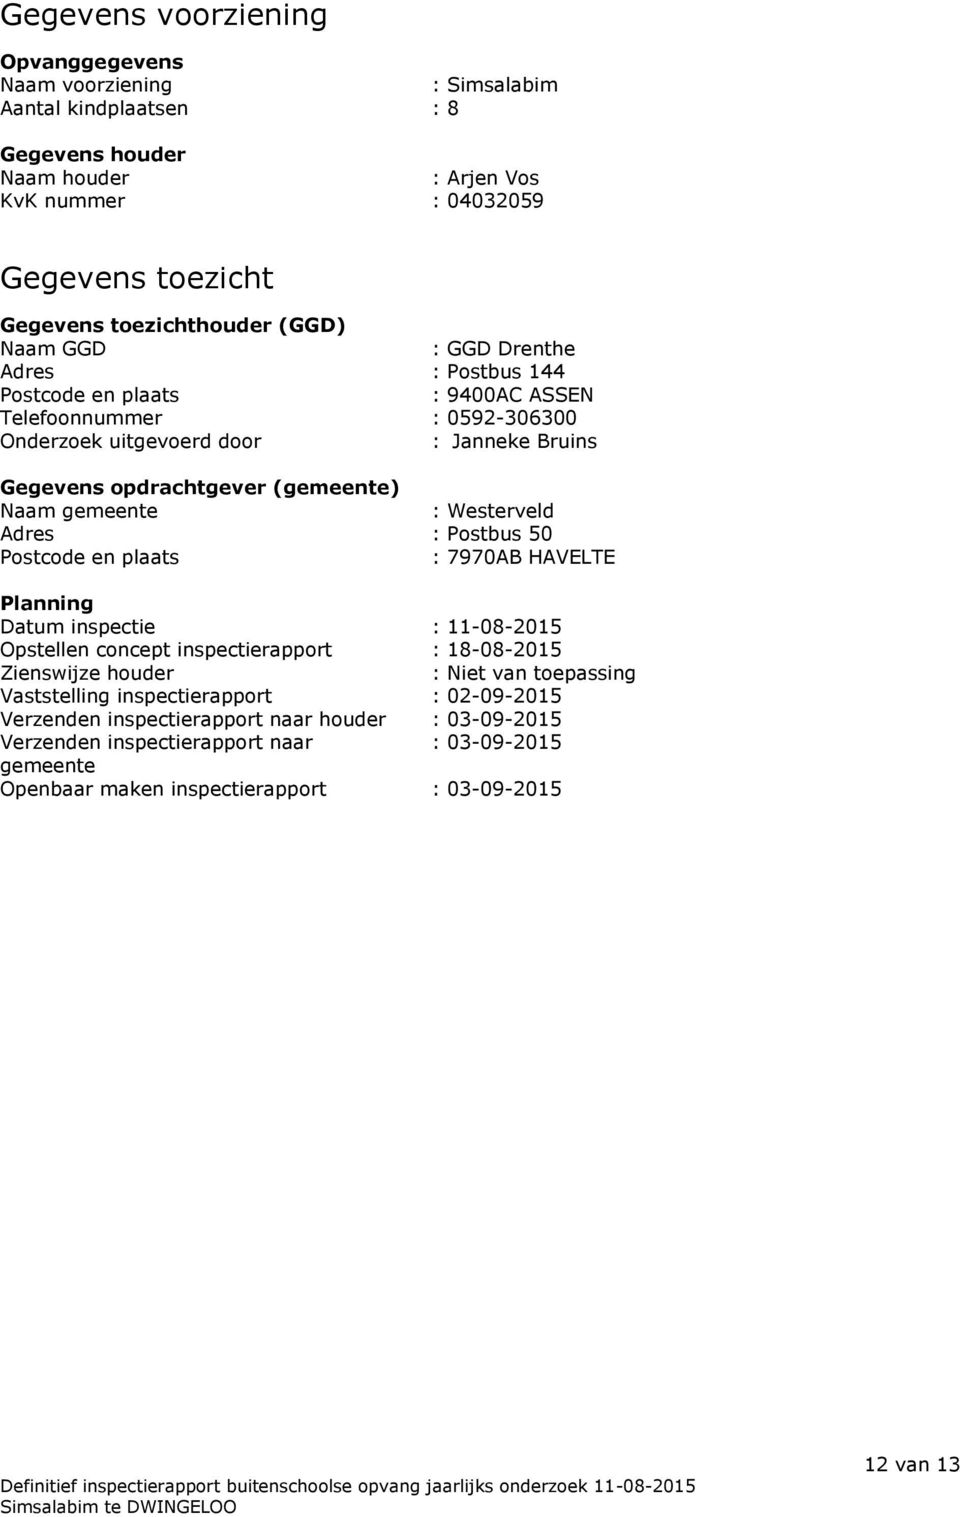 gemeente : Westerveld Adres : Postbus 50 Postcode en plaats : 7970AB HAVELTE Planning Datum inspectie : 11-08-2015 Opstellen concept inspectierapport : 18-08-2015 Zienswijze houder : Niet van